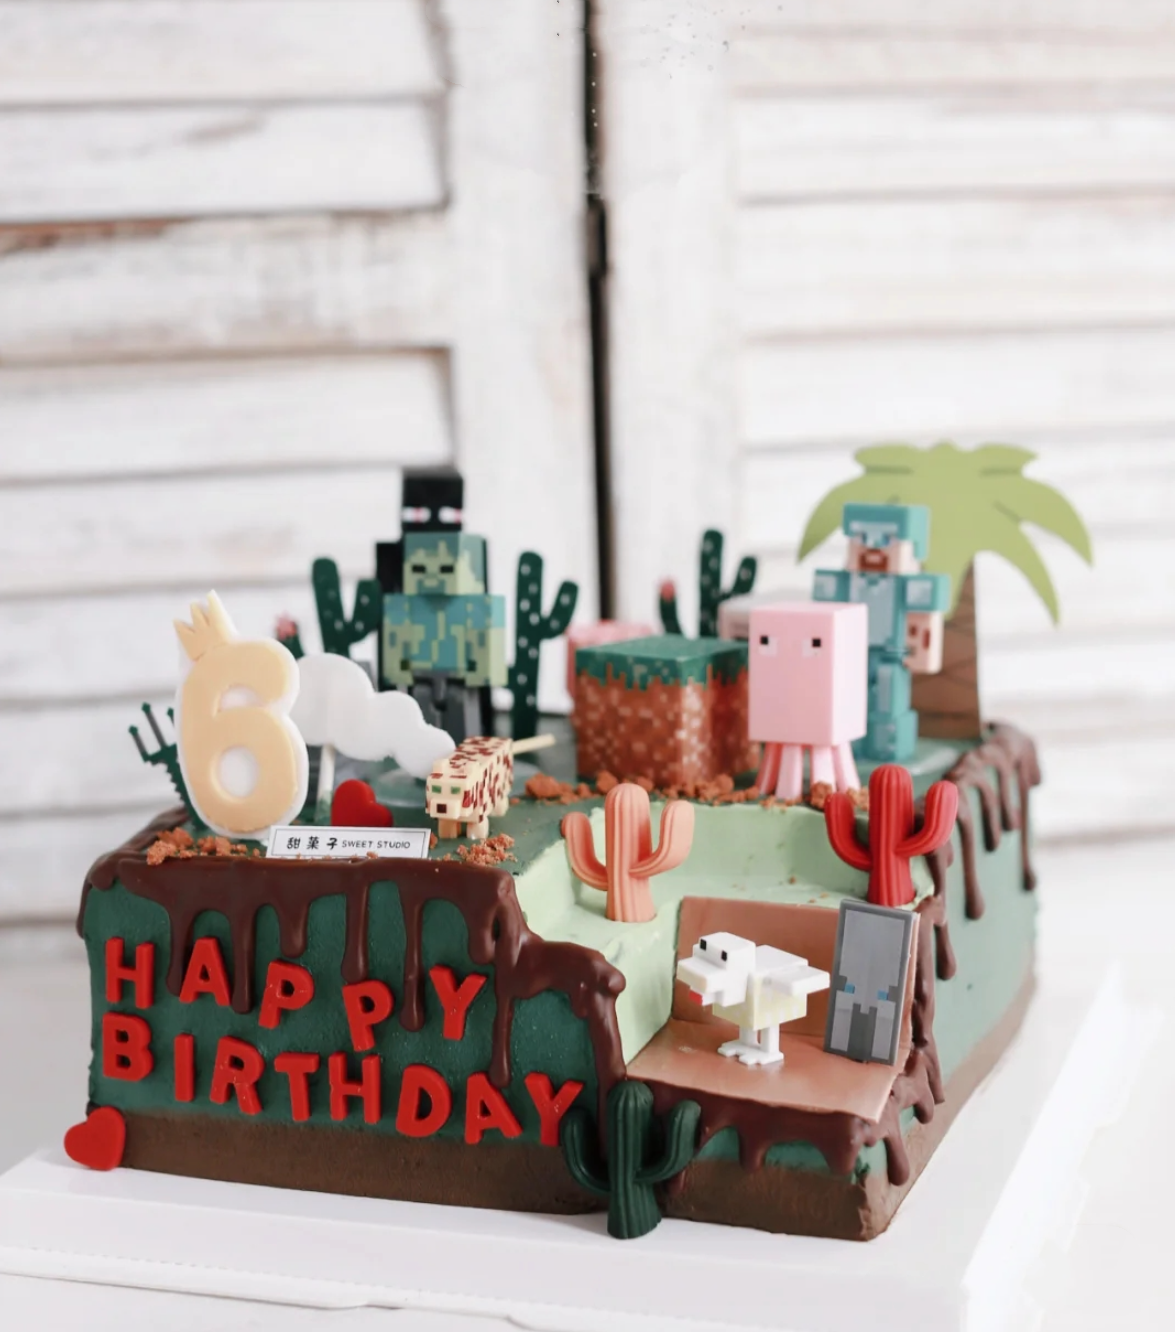 我的世界儿童生日蛋糕装饰积木方块人情景蛋糕摆件 布置用品公仔